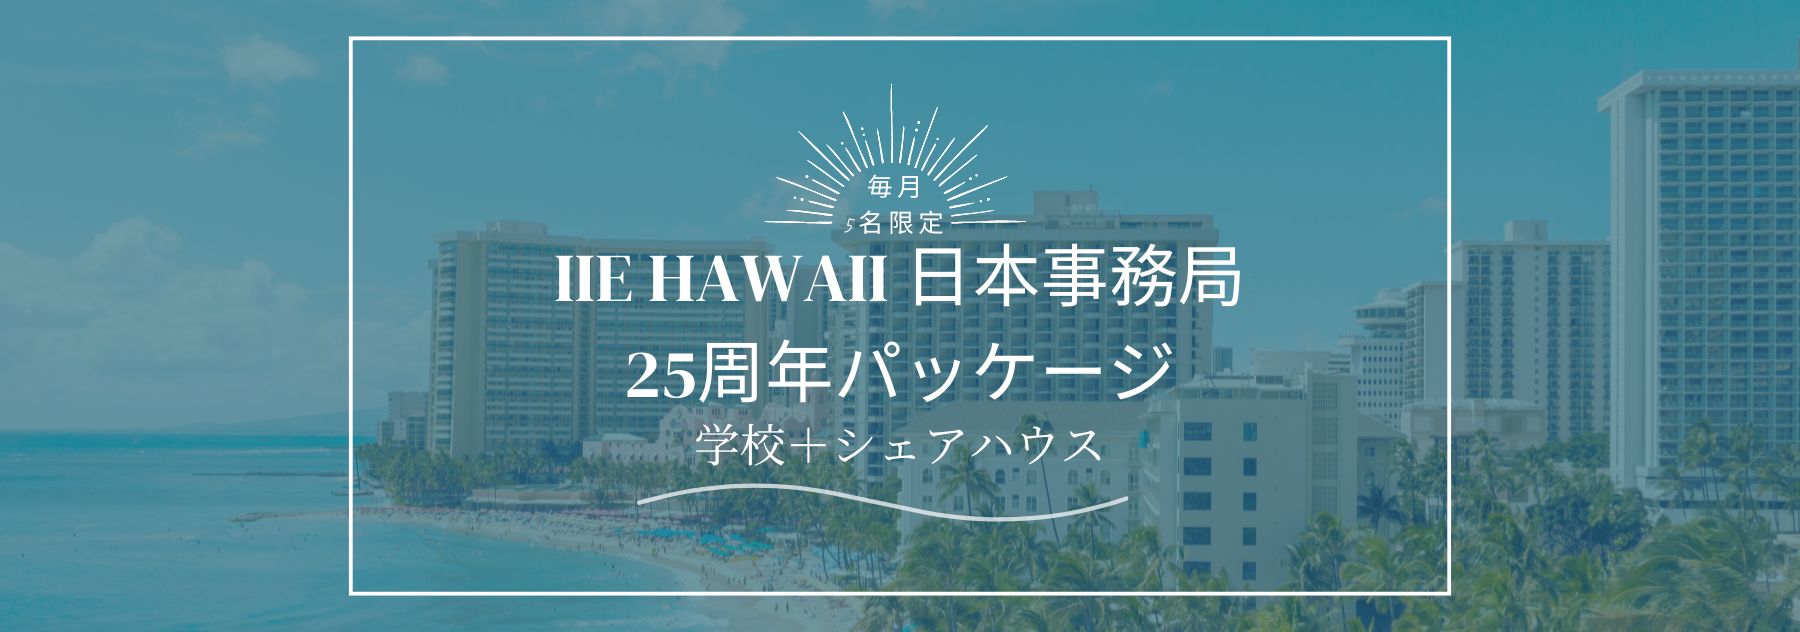 IIE Hawaii 日本事務局25周年記念